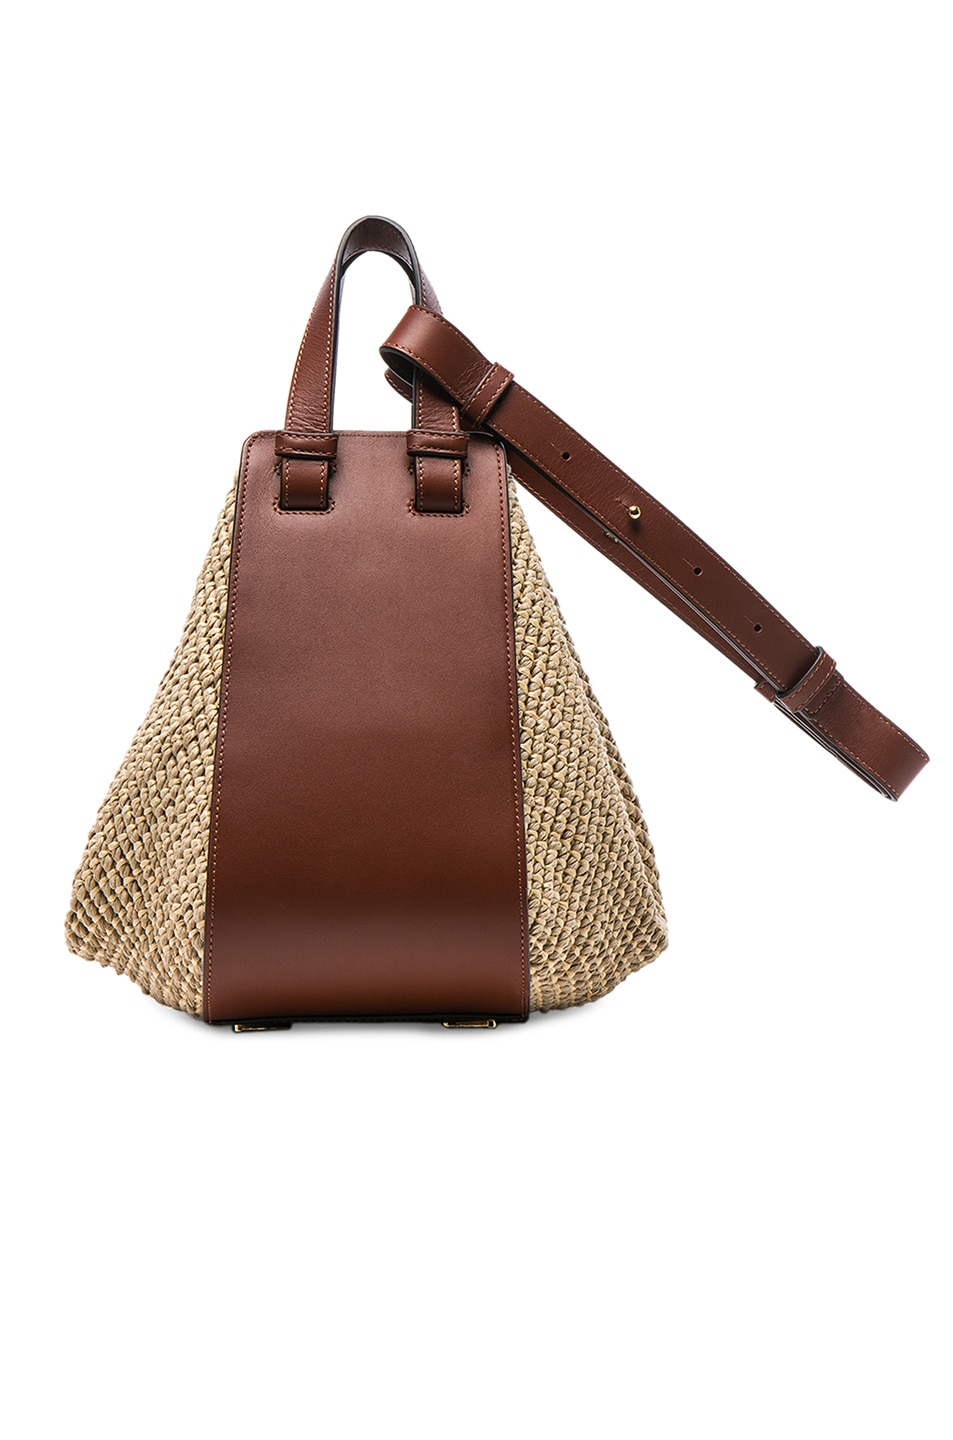 Loewe Hammock Raffia Small Bag in Natural & Tan | FWRD